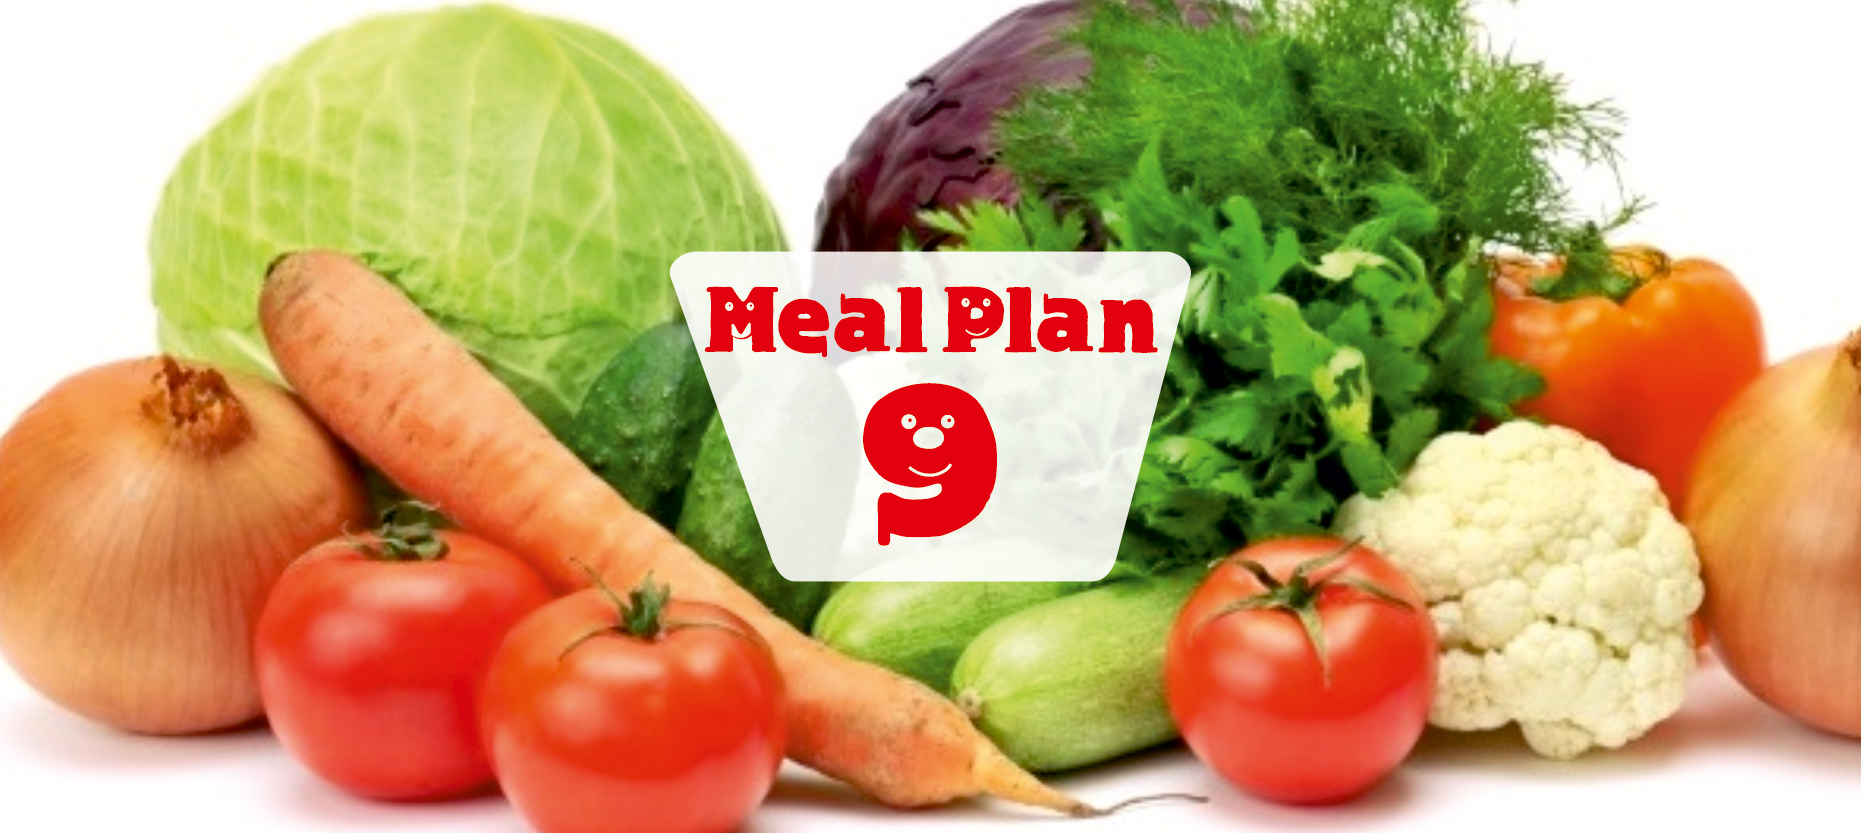 meal plan 9